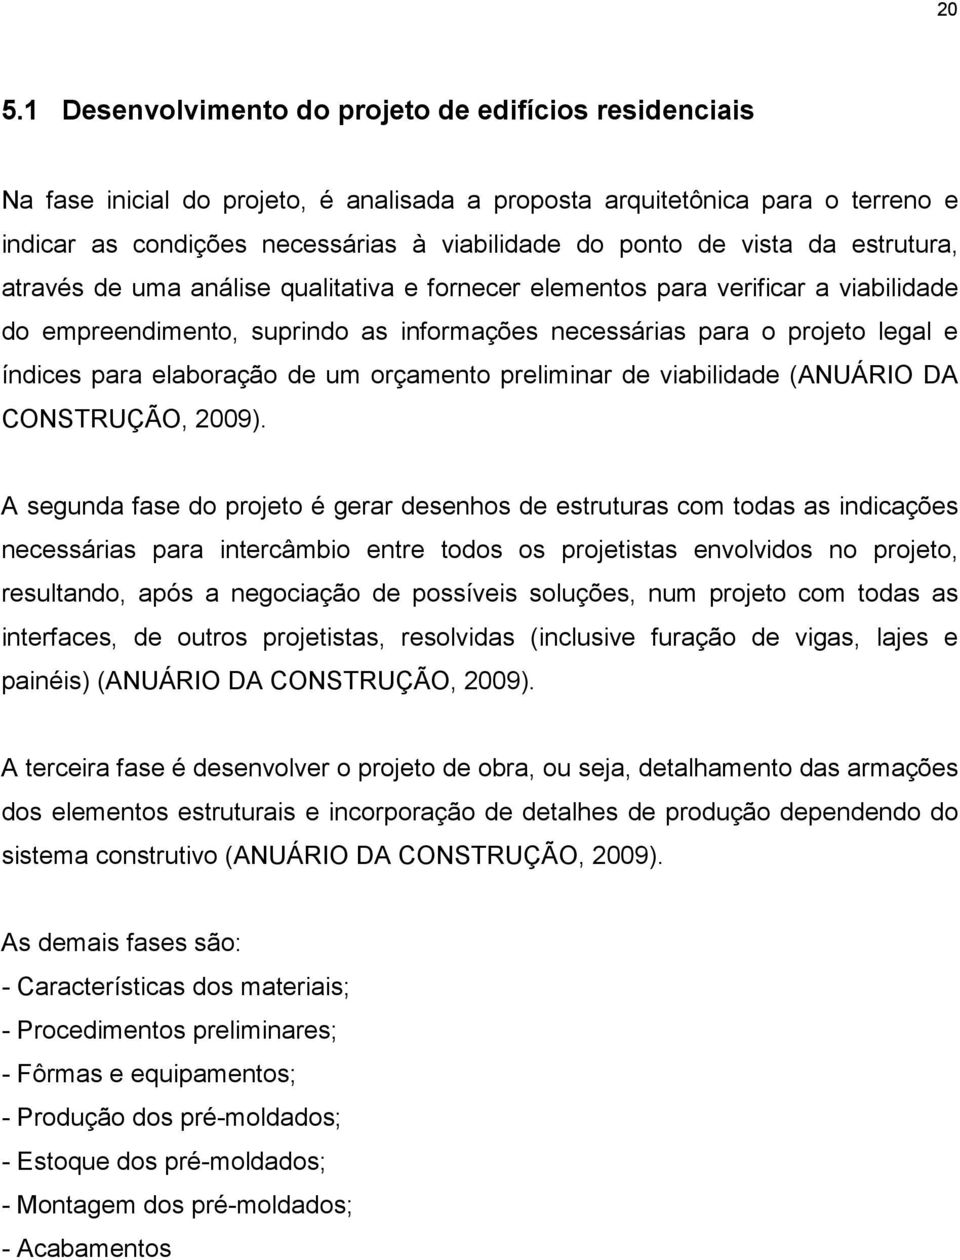 elaboração de um orçamento preliminar de viabilidade (ANUÁRIO DA CONSTRUÇÃO, 2009).